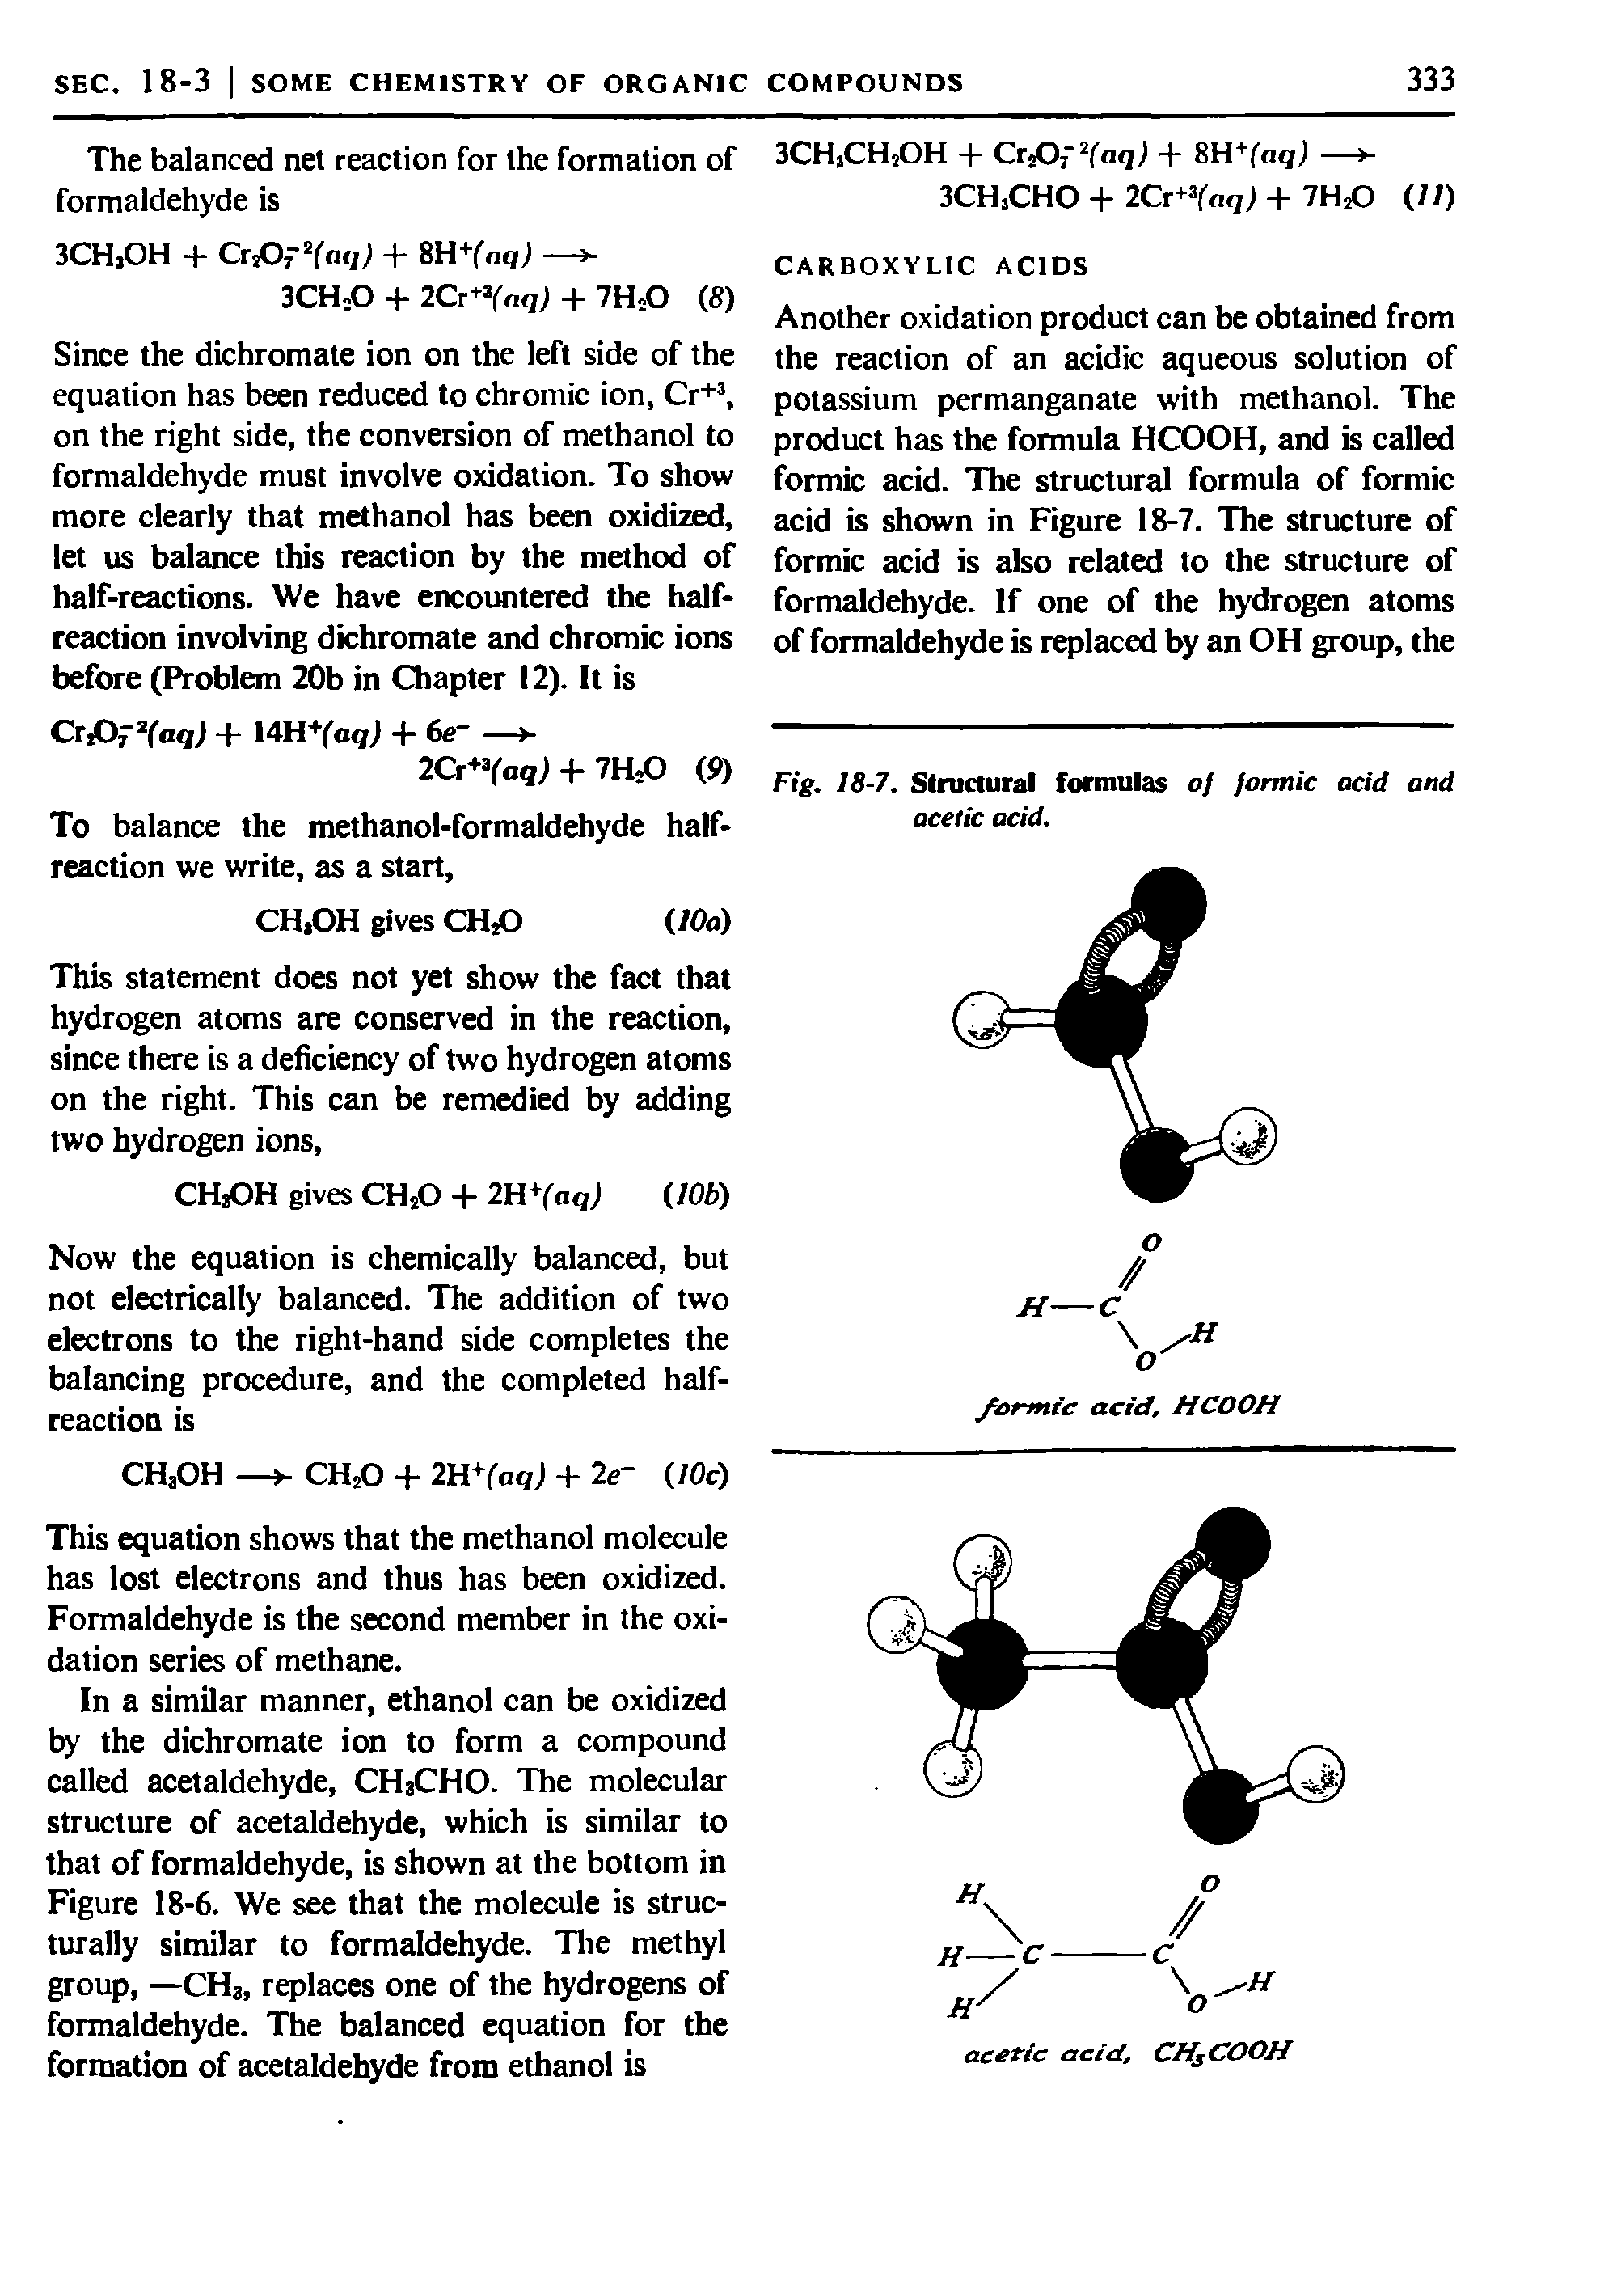 Fig. 18-7. Structural formulas 0/ formic acid and acetic acid.